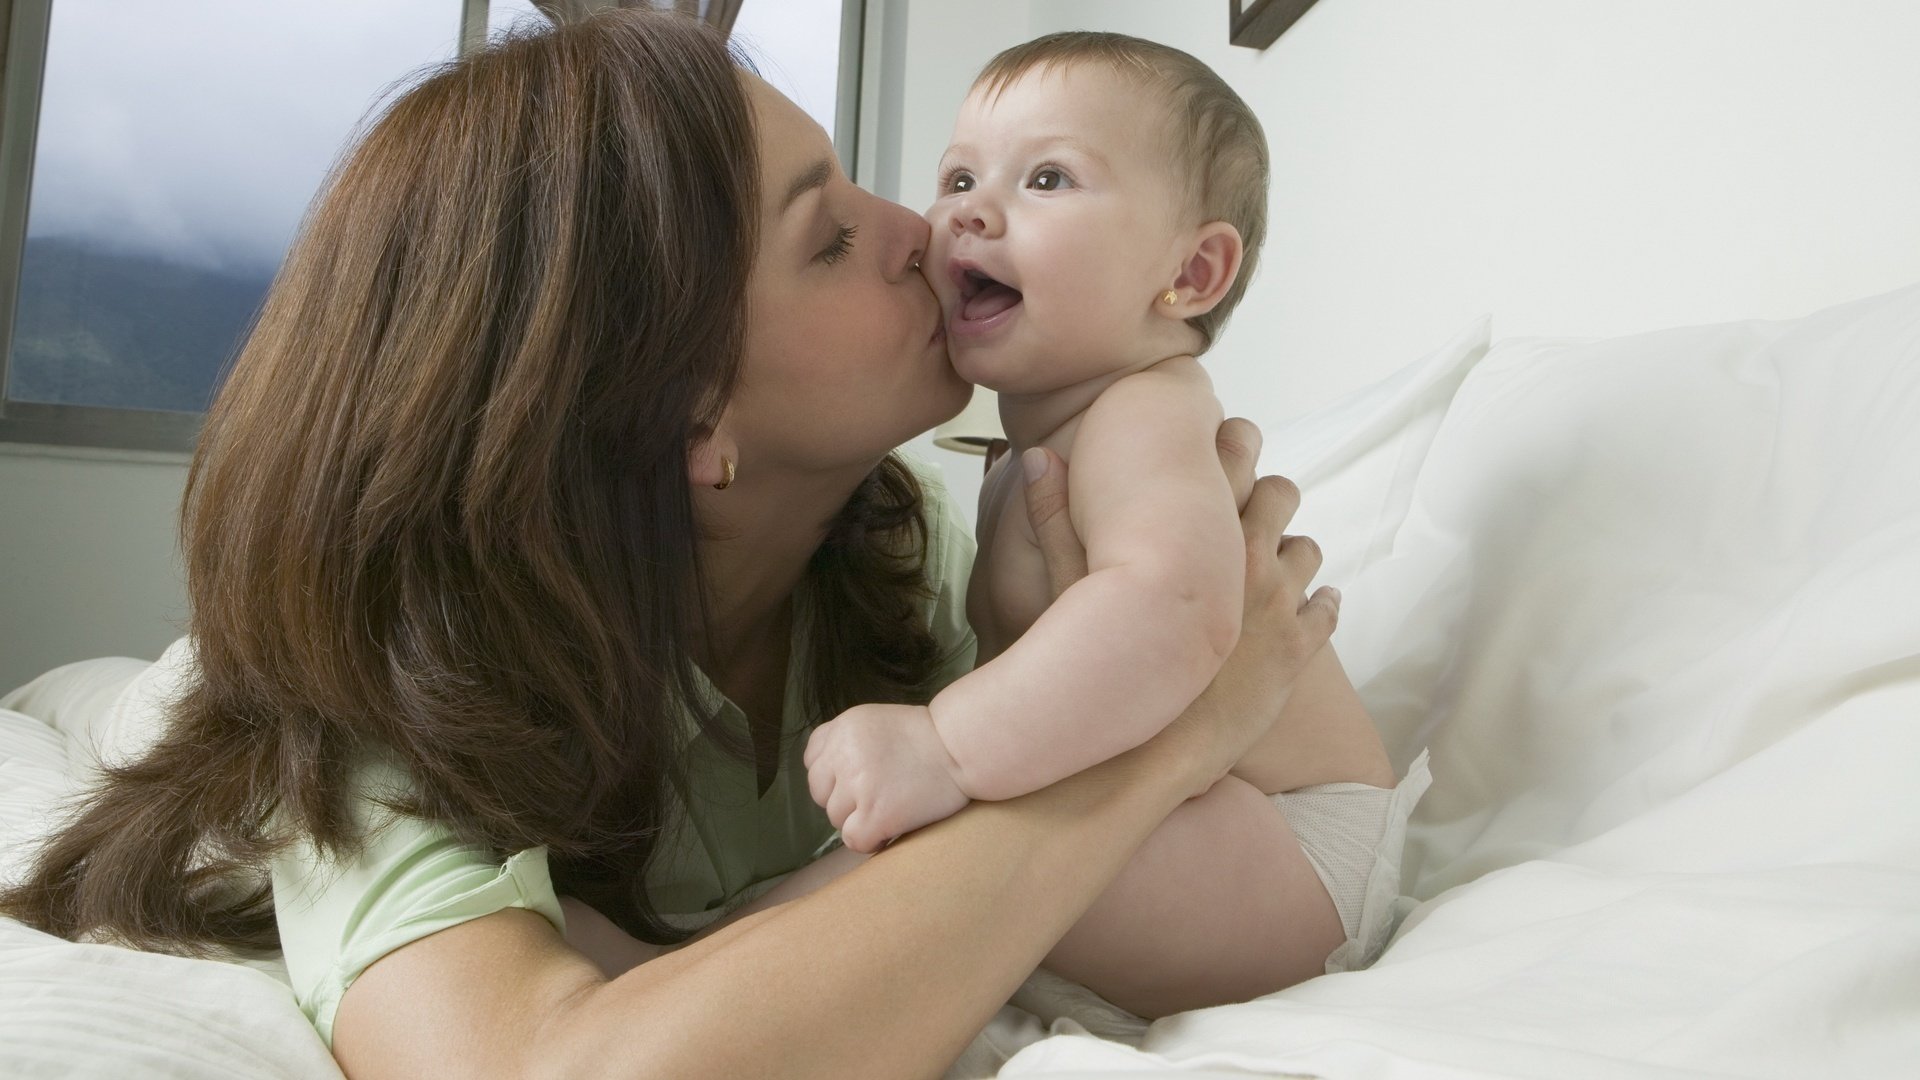 Красиво лижет маме. Малыш и мама. Женщина с ребенком. Мама целует малыша. Мама картинка для детей.